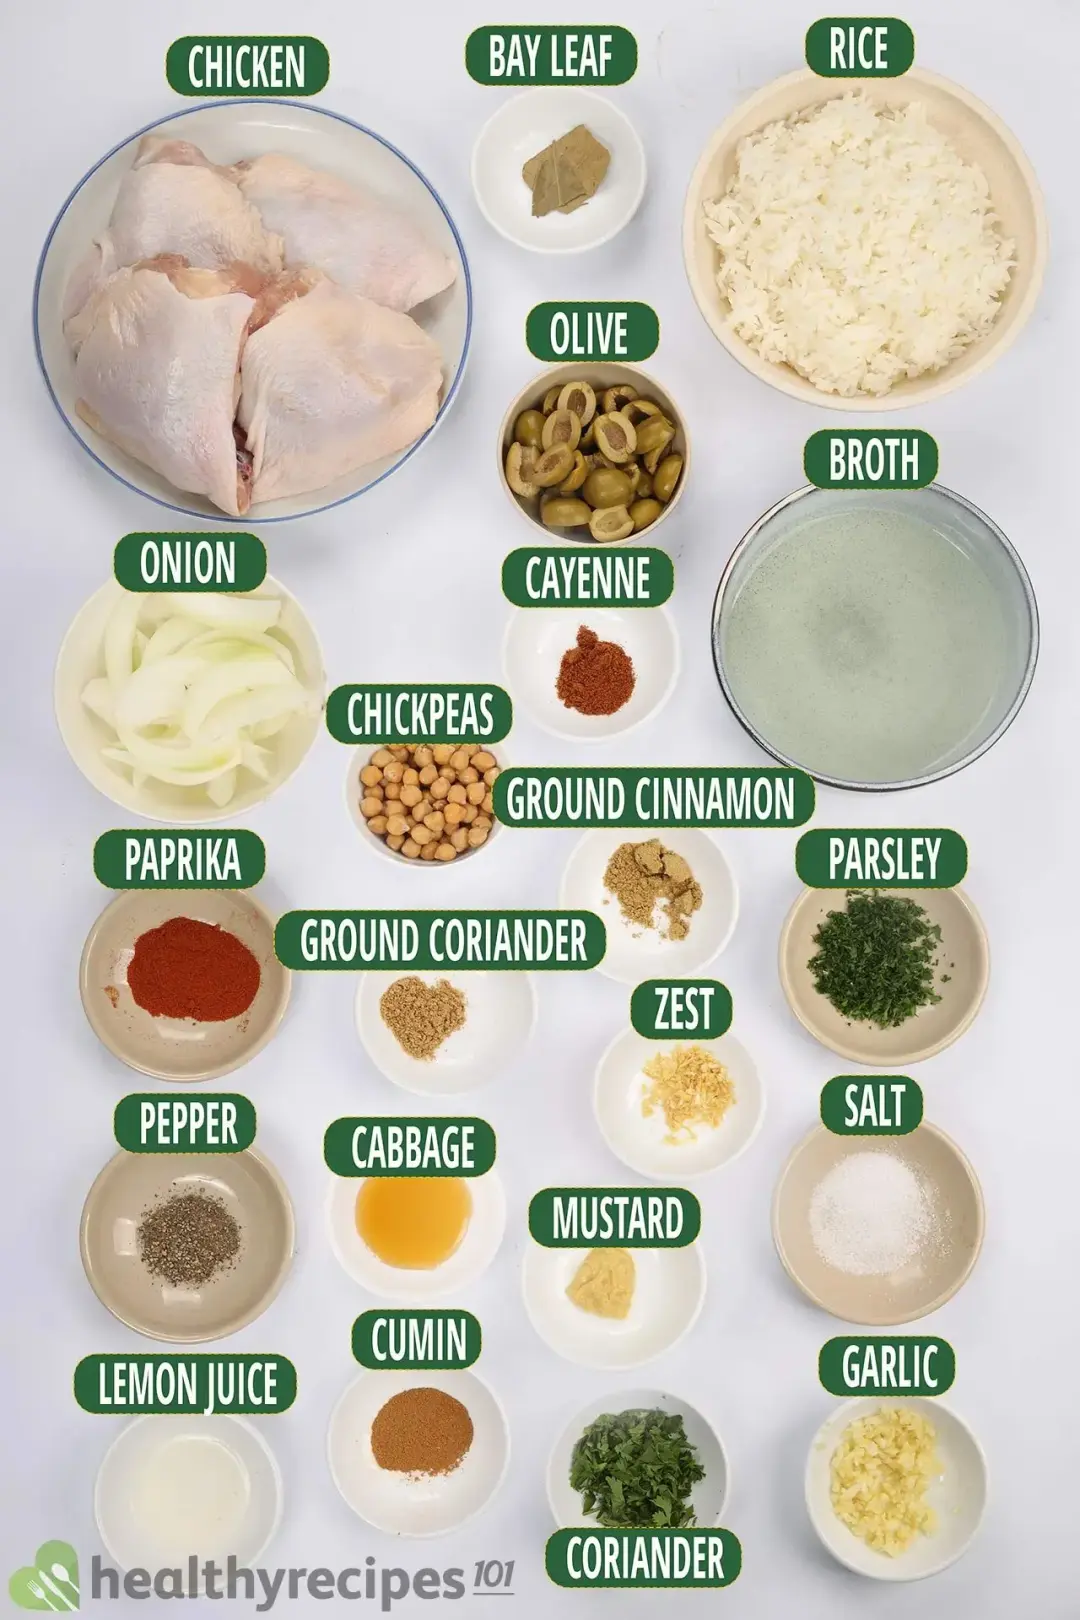 Ingredients for Chicken Tagine